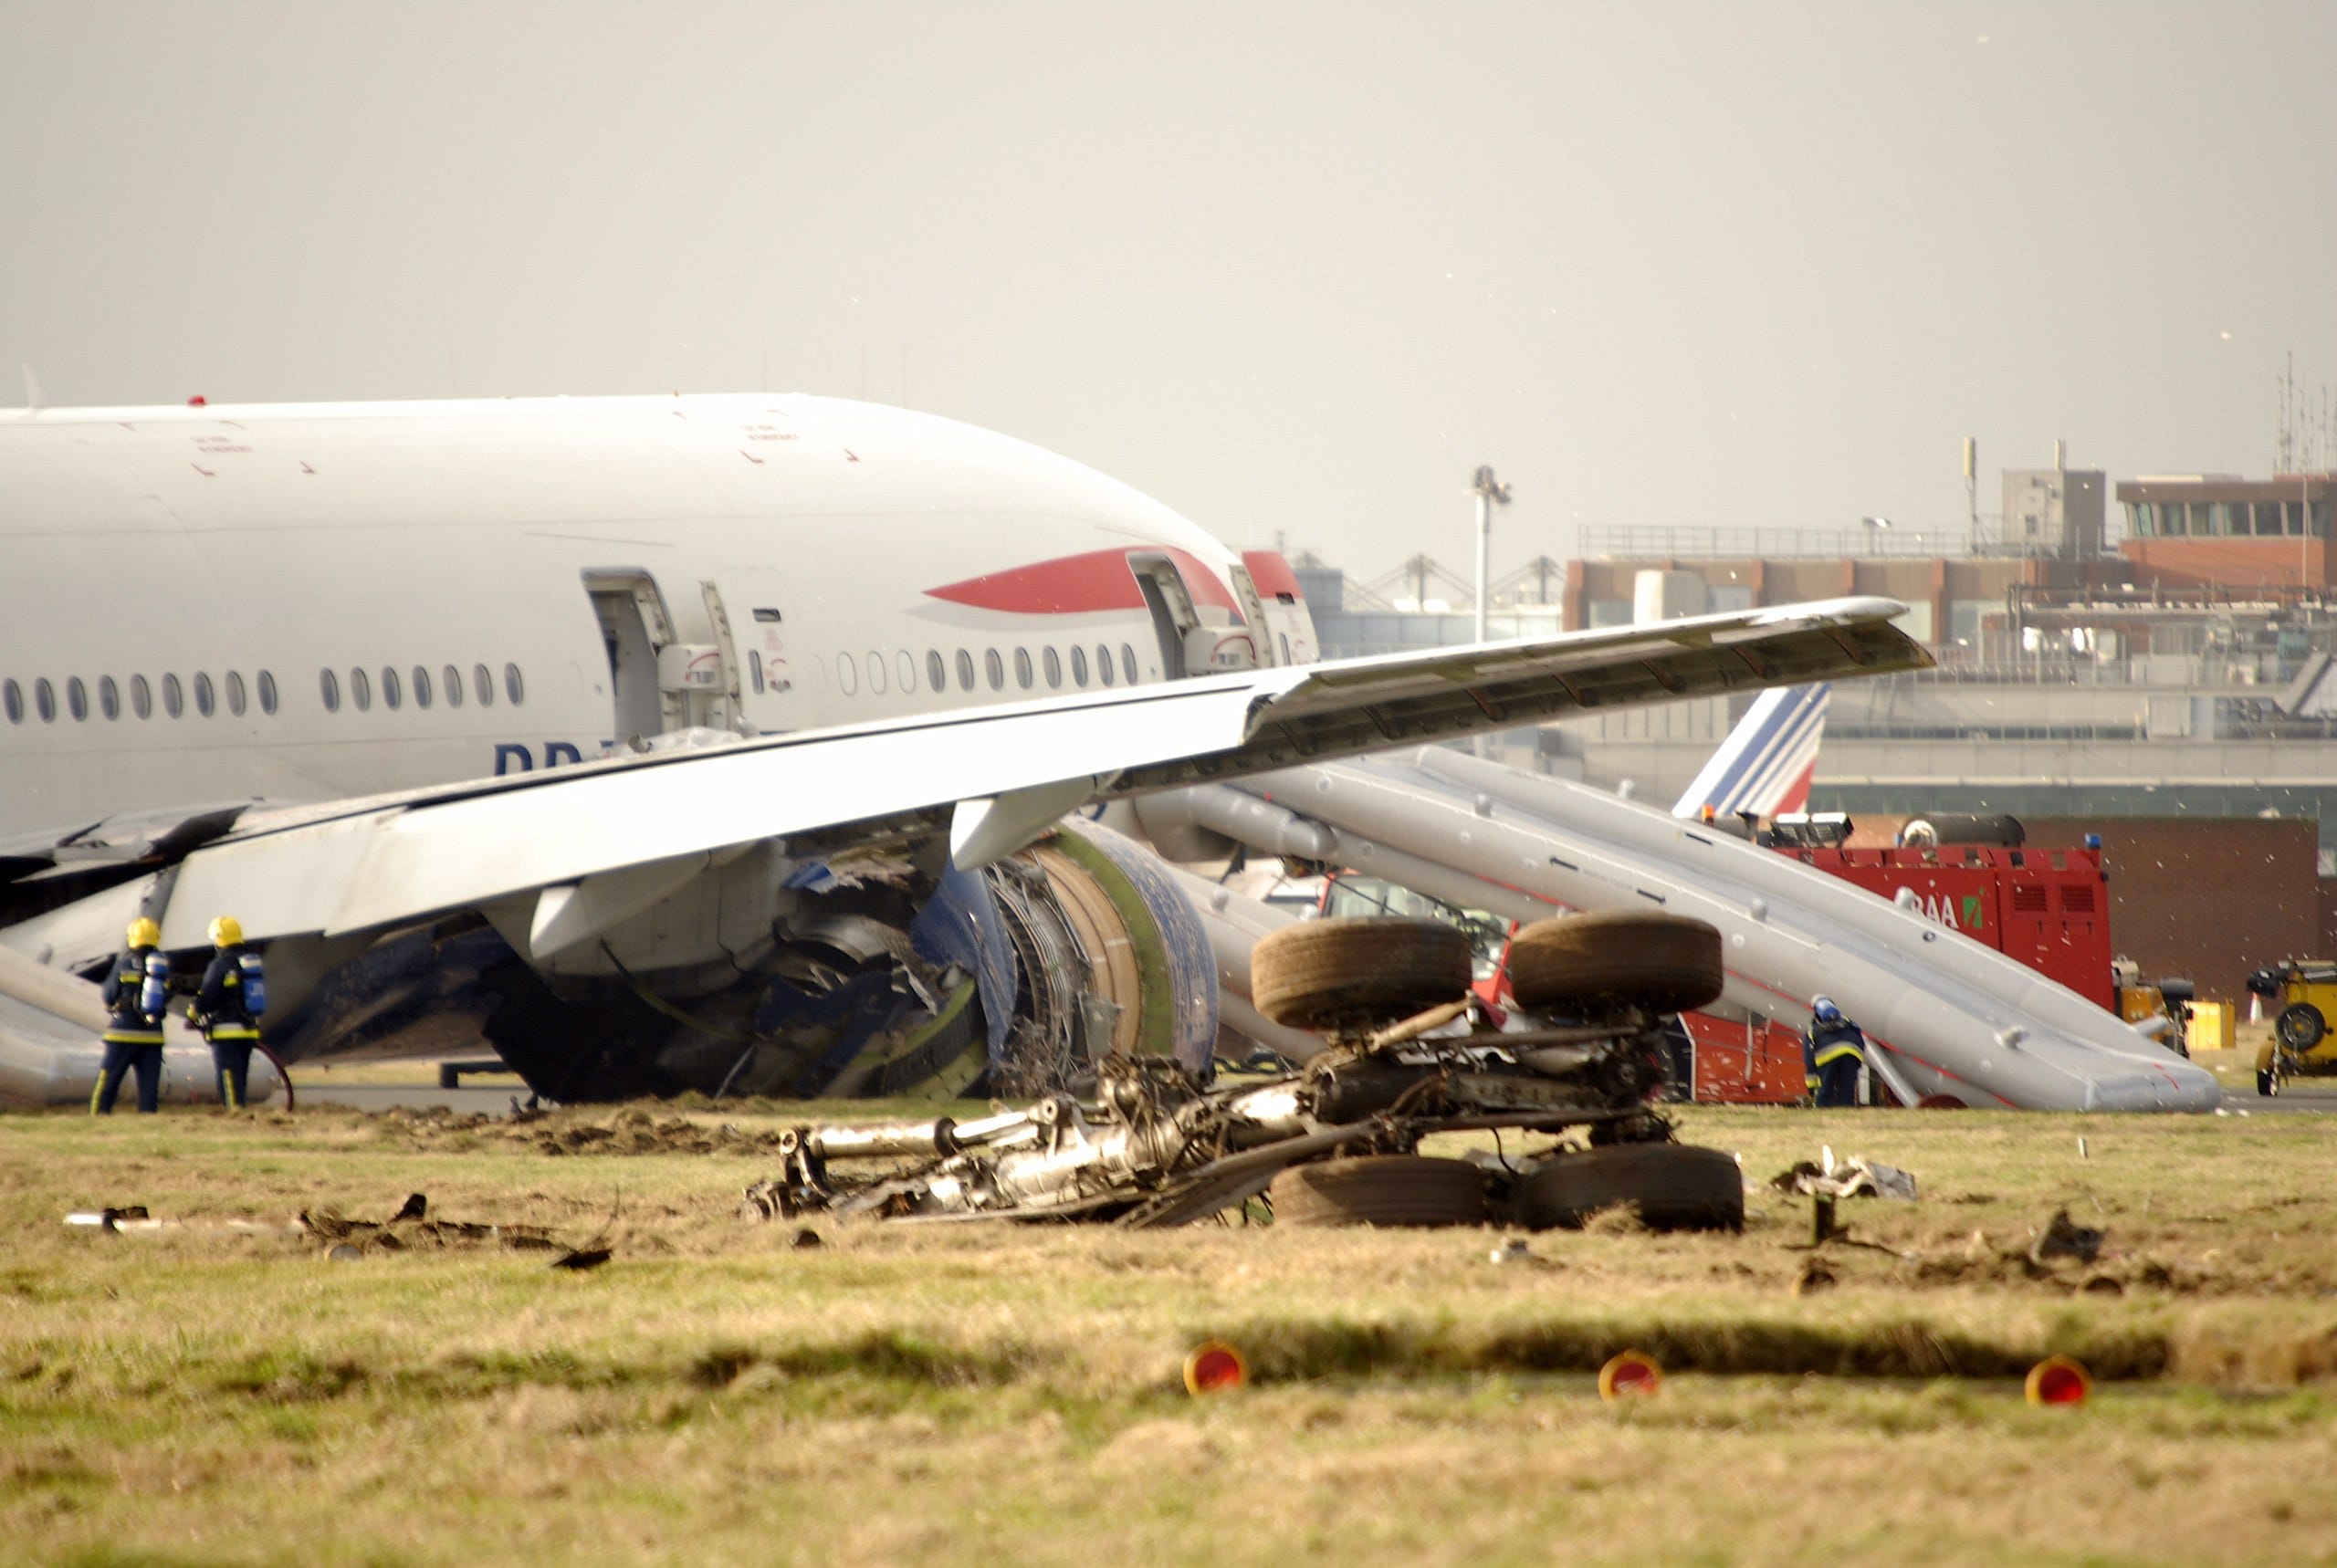 Powerless over London: The crash of British Airways flight 38